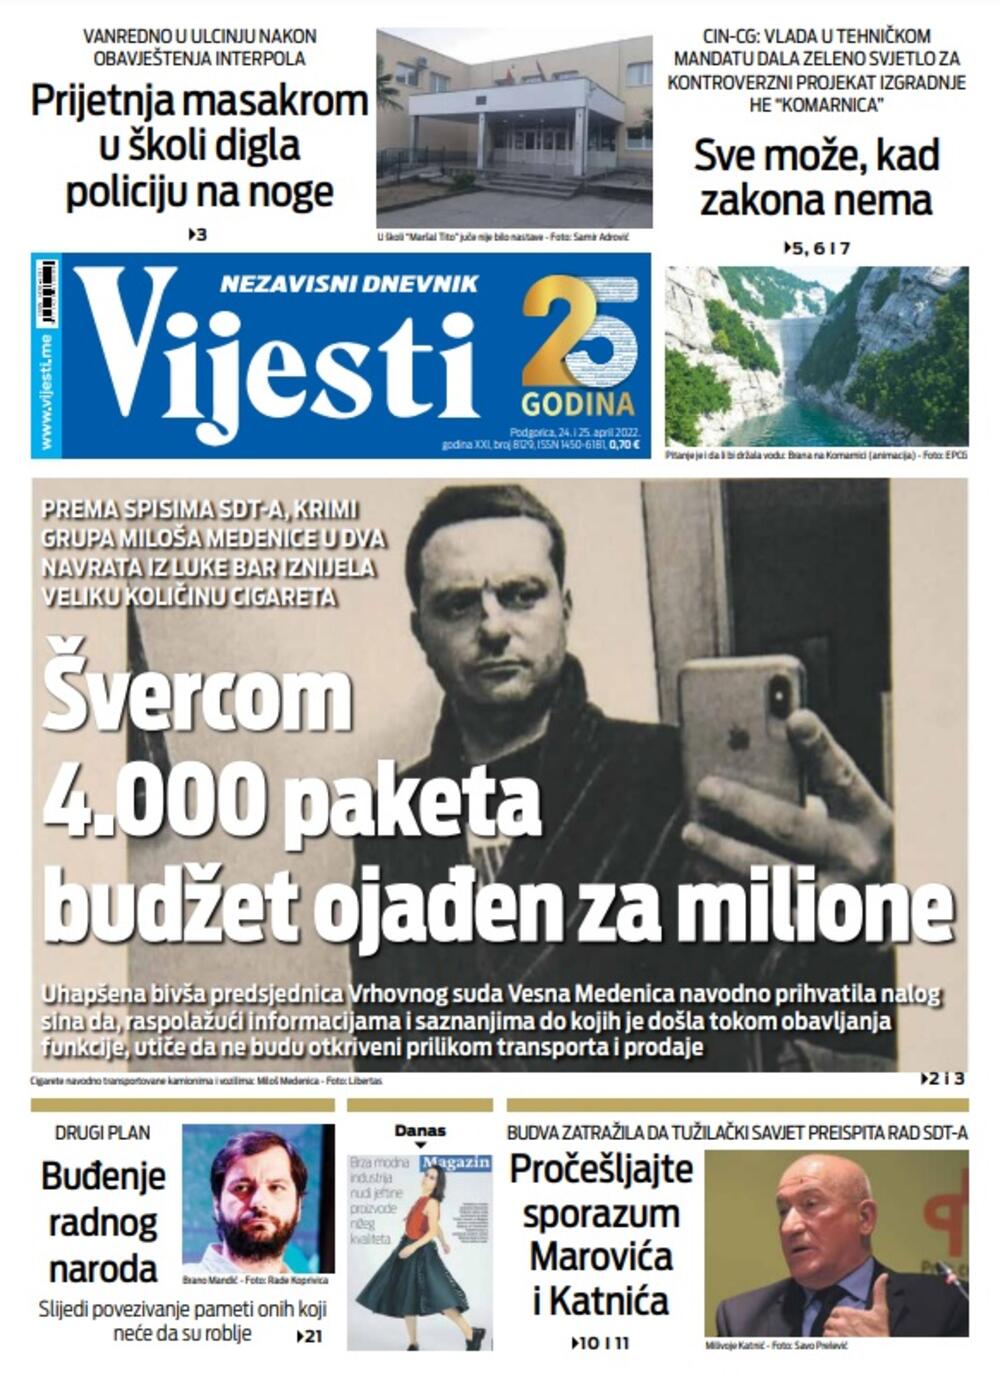 Naslovna strana "Vijesti" za 24. i 25. april 2022., Foto: Vijesti